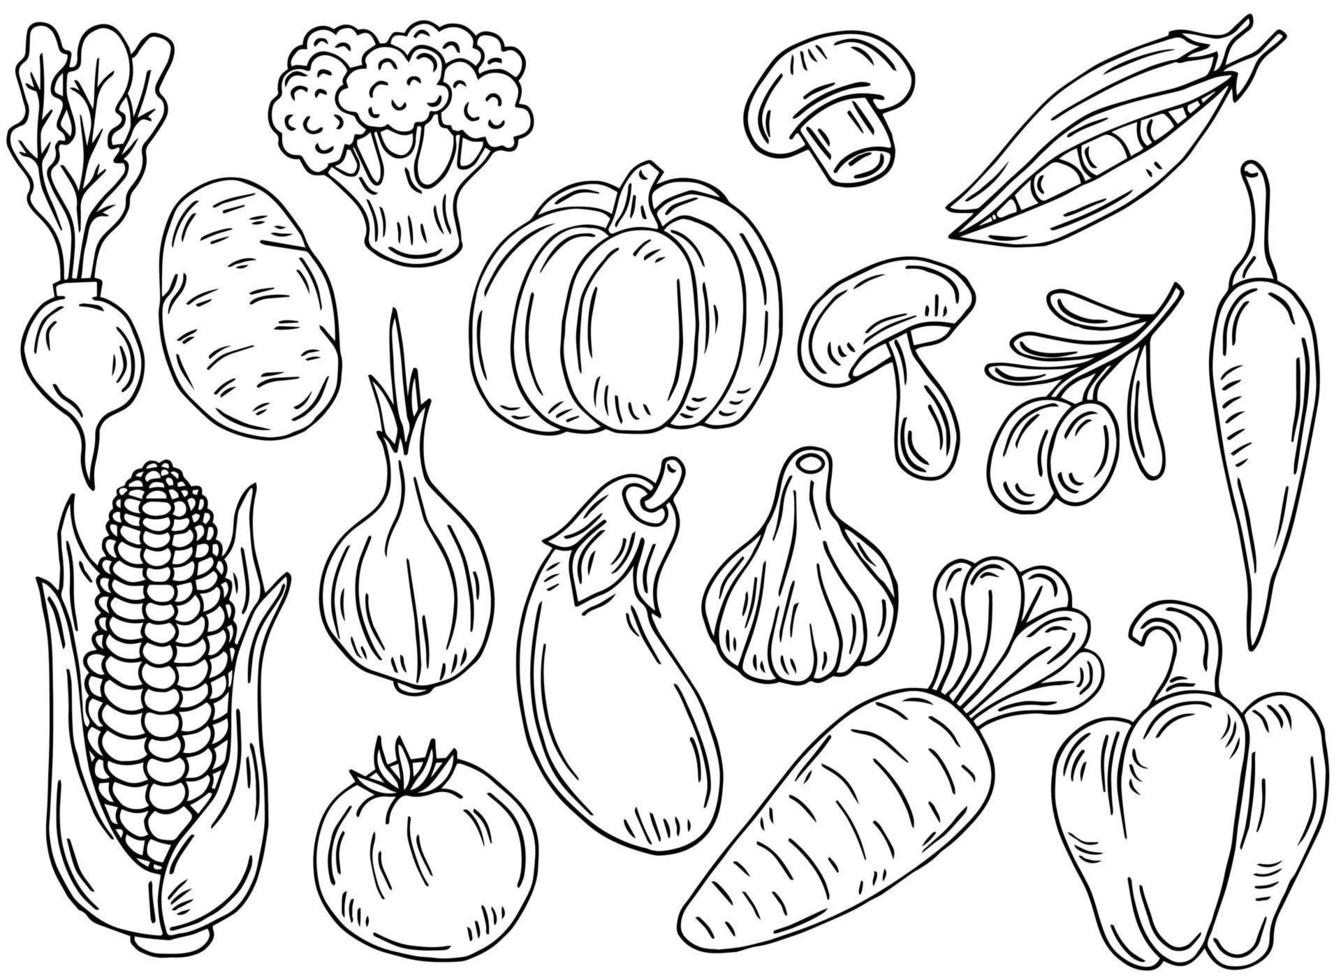 ensemble d'icônes végétales de contour noir. dessins dessinés à la main de carotte, chou, brocoli, maïs, citrouille. esquisser l'illustration de la nourriture. Doodle silhouettes d'éléments de récolte vecteur